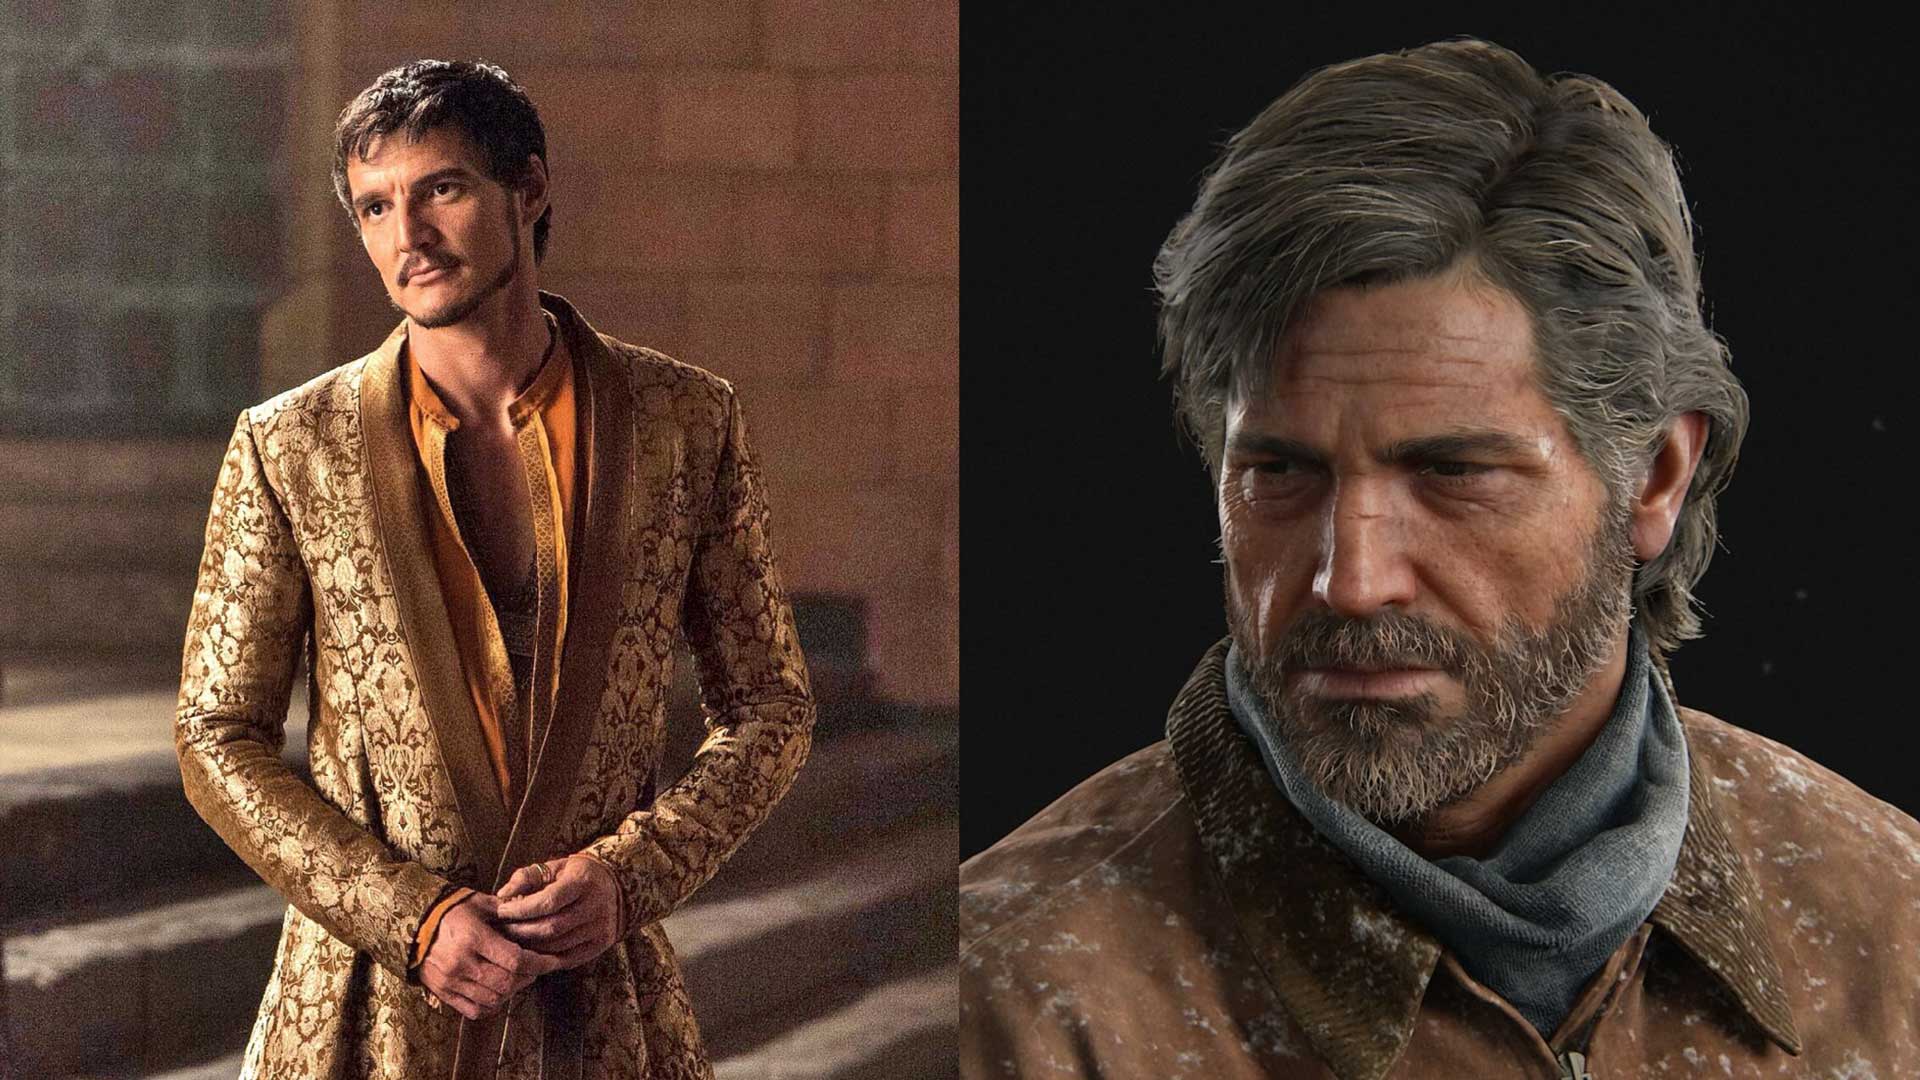 اوبرین مارتل در سریال Game of Thrones (بازی تاج و تخت) با نقش آفرینی پدرو پاسکال کنار جول در بازی The Last of Us